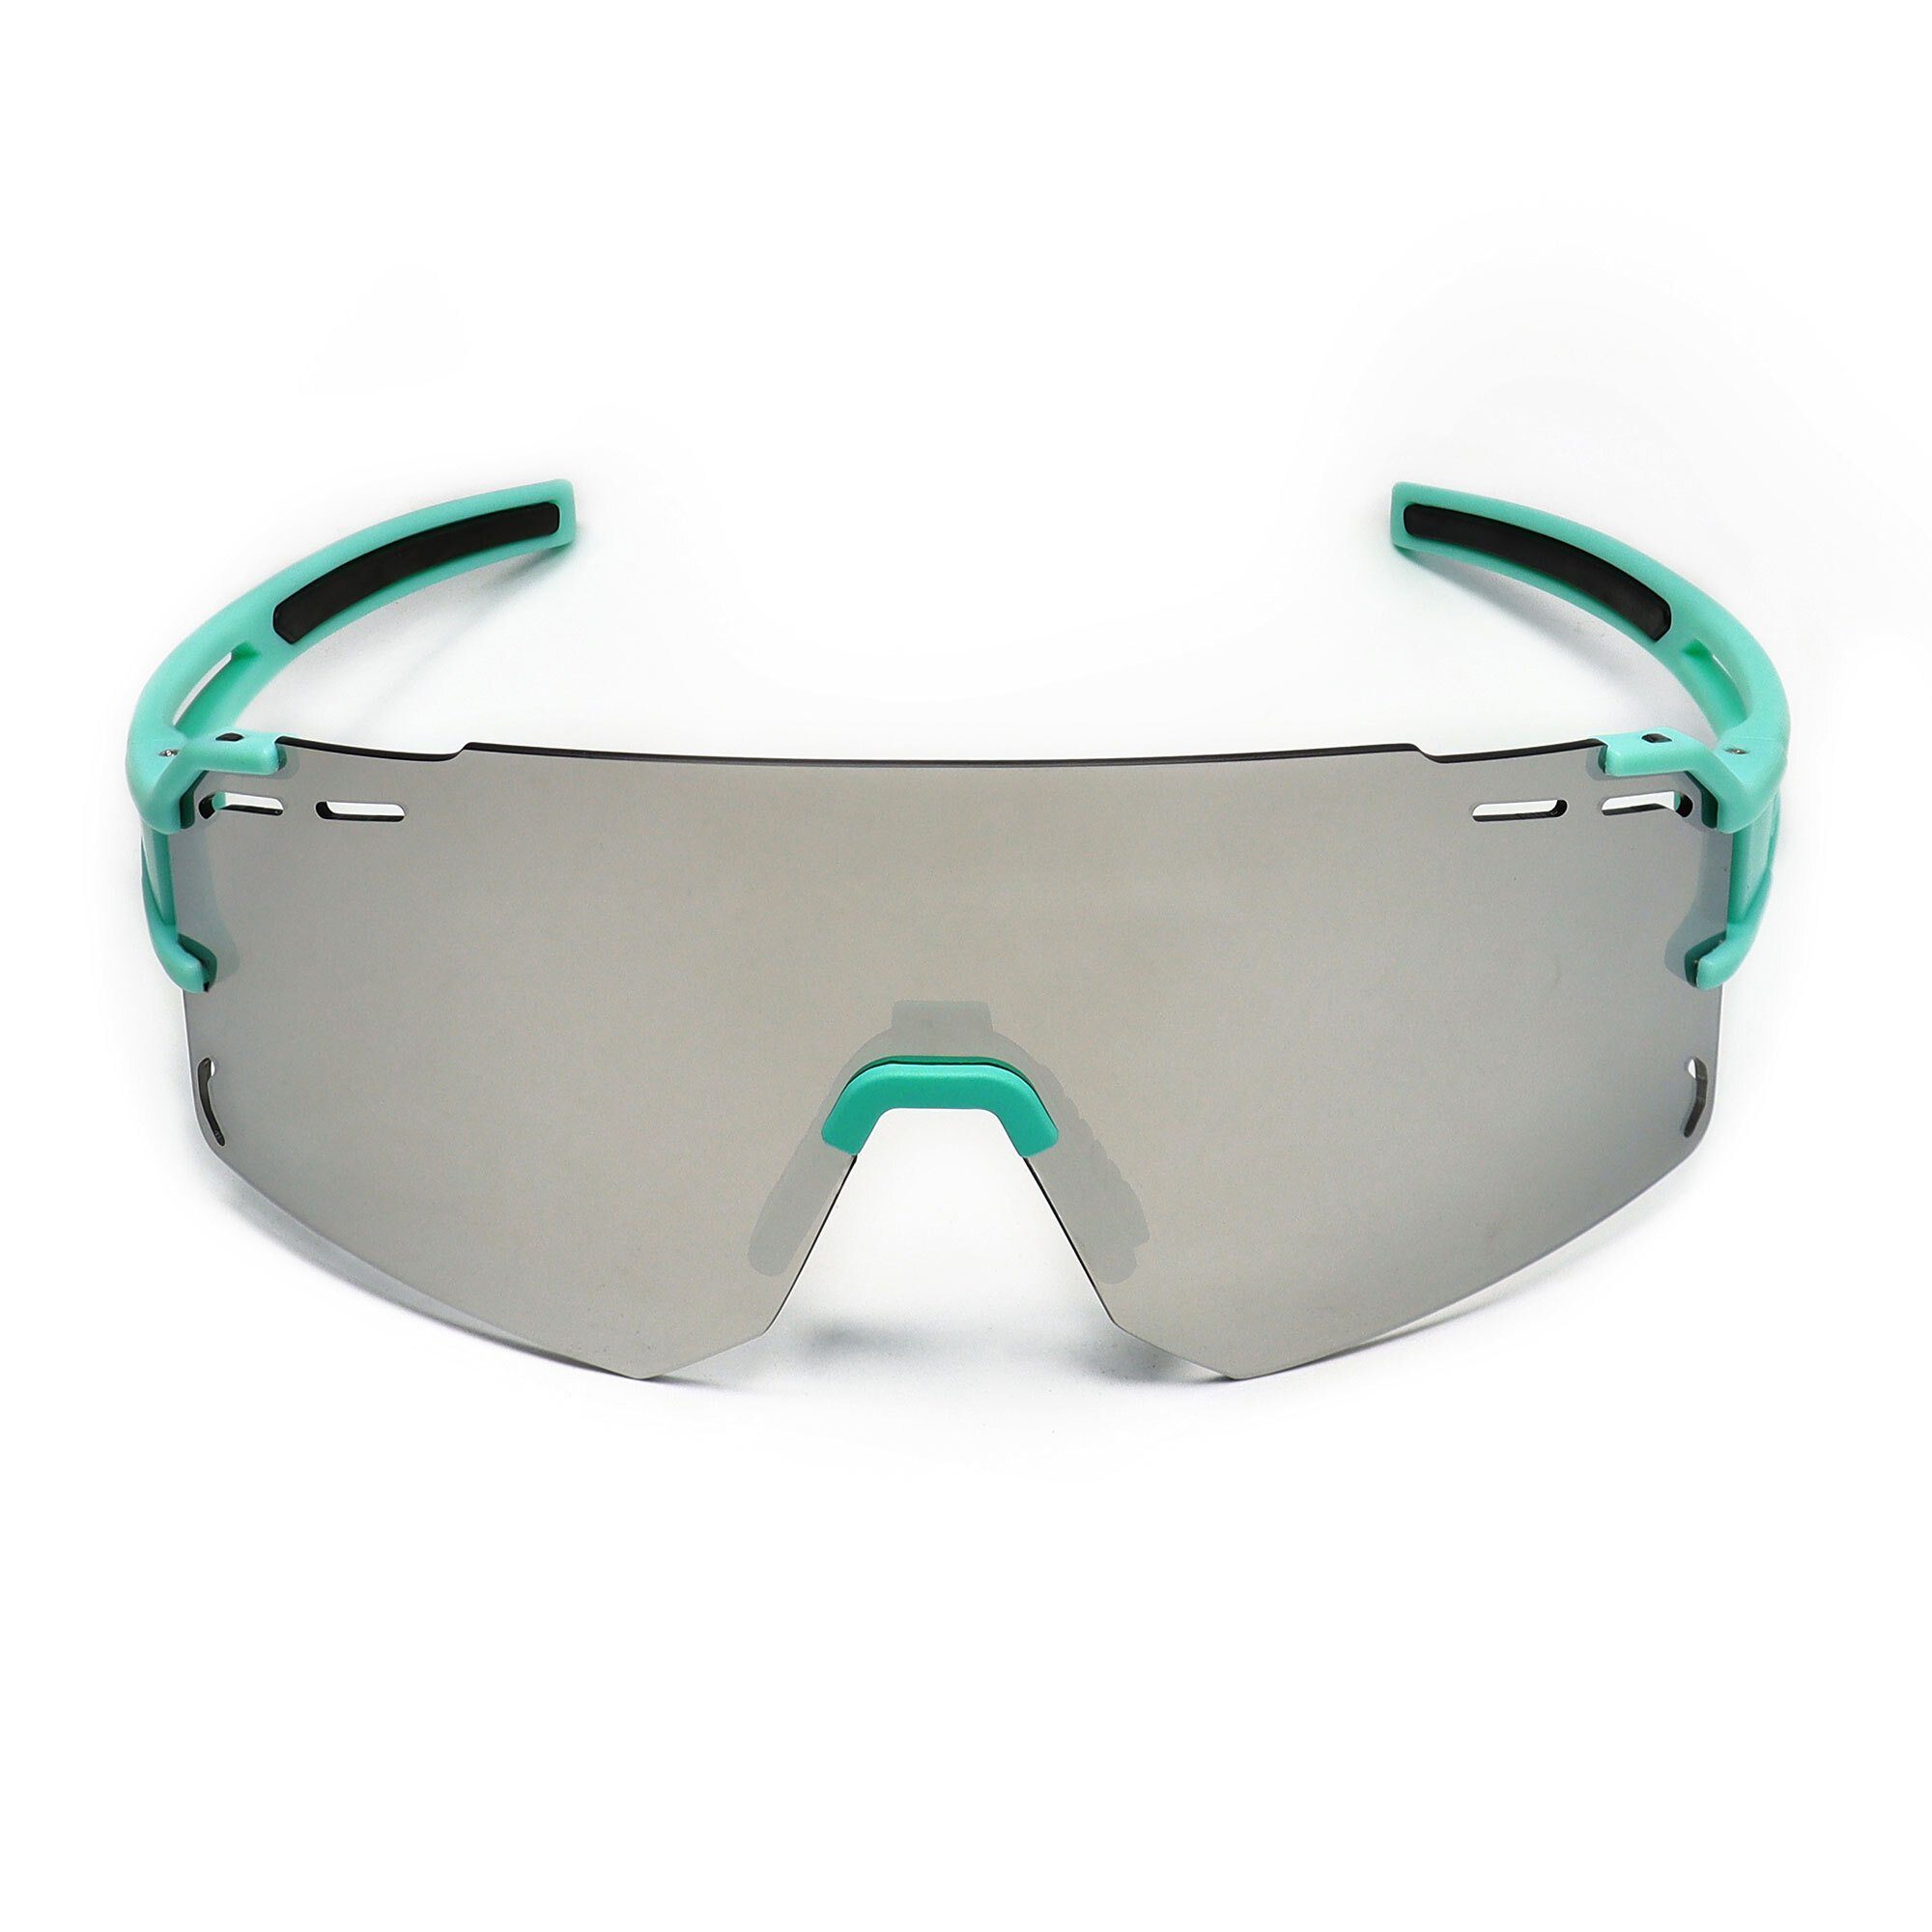 Sportbrille YEAZ grün silber grün, Sport-Sonnenbrille SUNCRUISE sport-sonnenbrille /